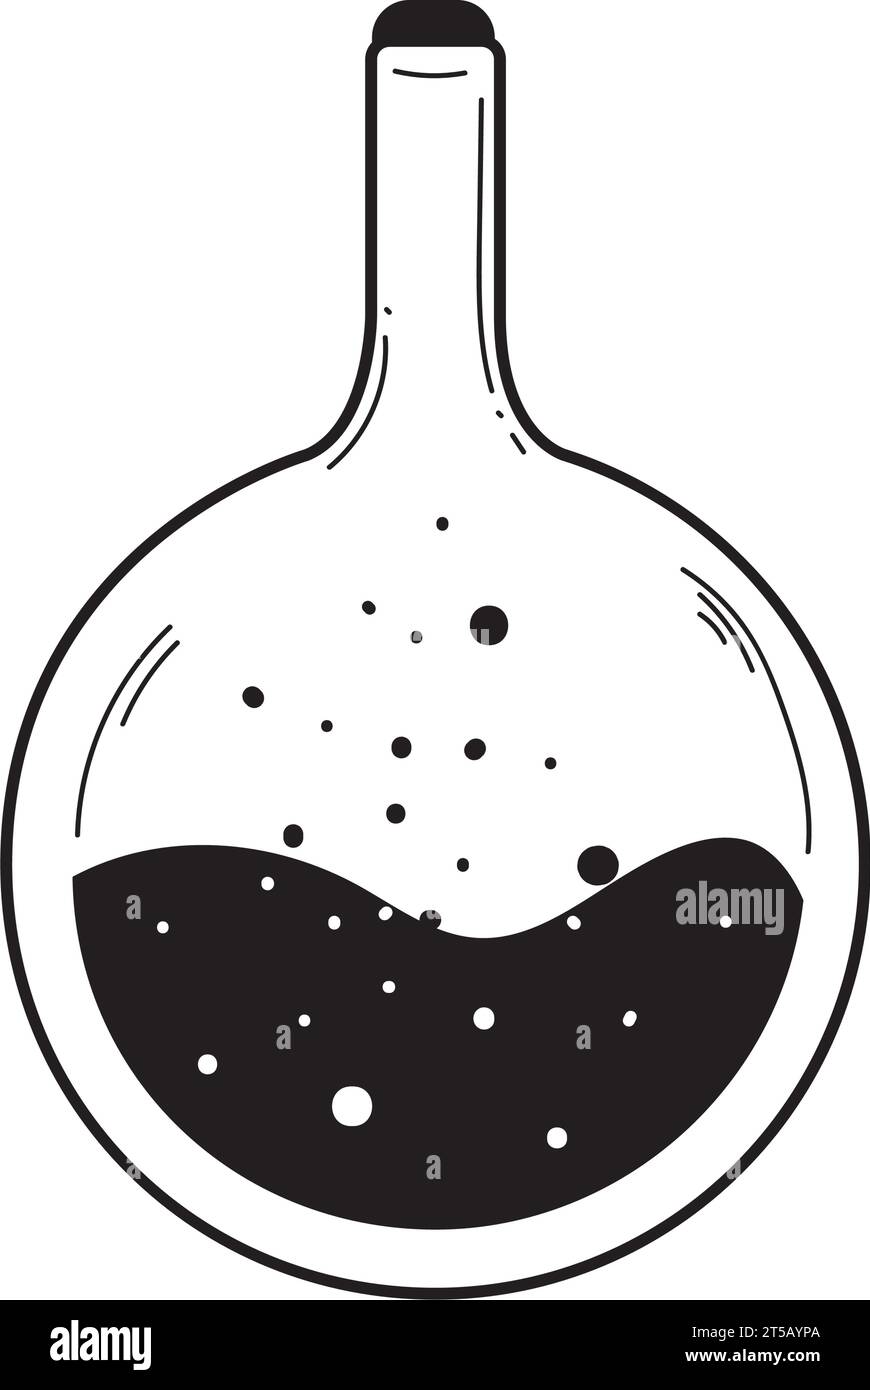 Vecteur d'icône d'esquisse de potion d'alchimie isolée d'ésotérisme Illustration de Vecteur